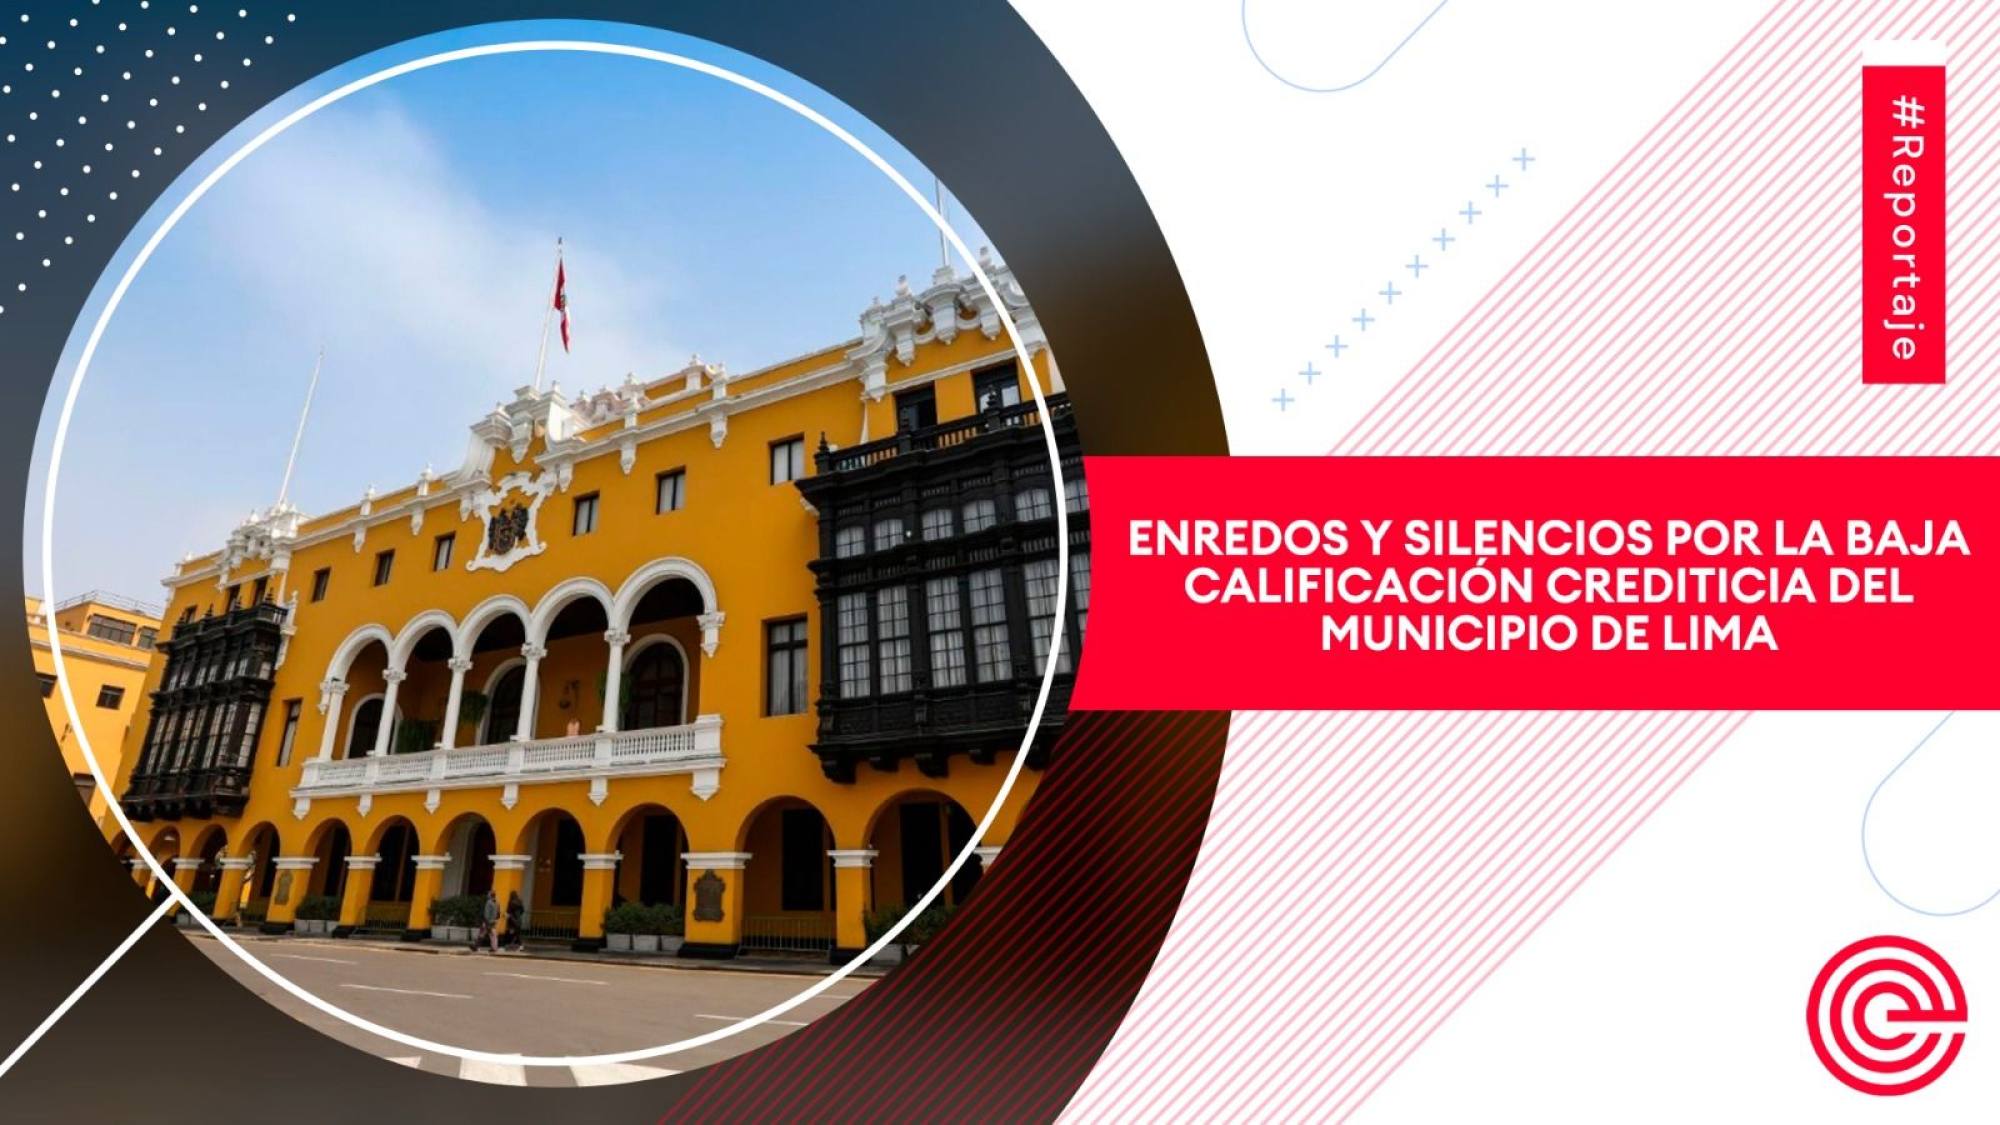 Enredos y silencios por la baja calificación crediticia del municipio de Lima, Epicentro TV